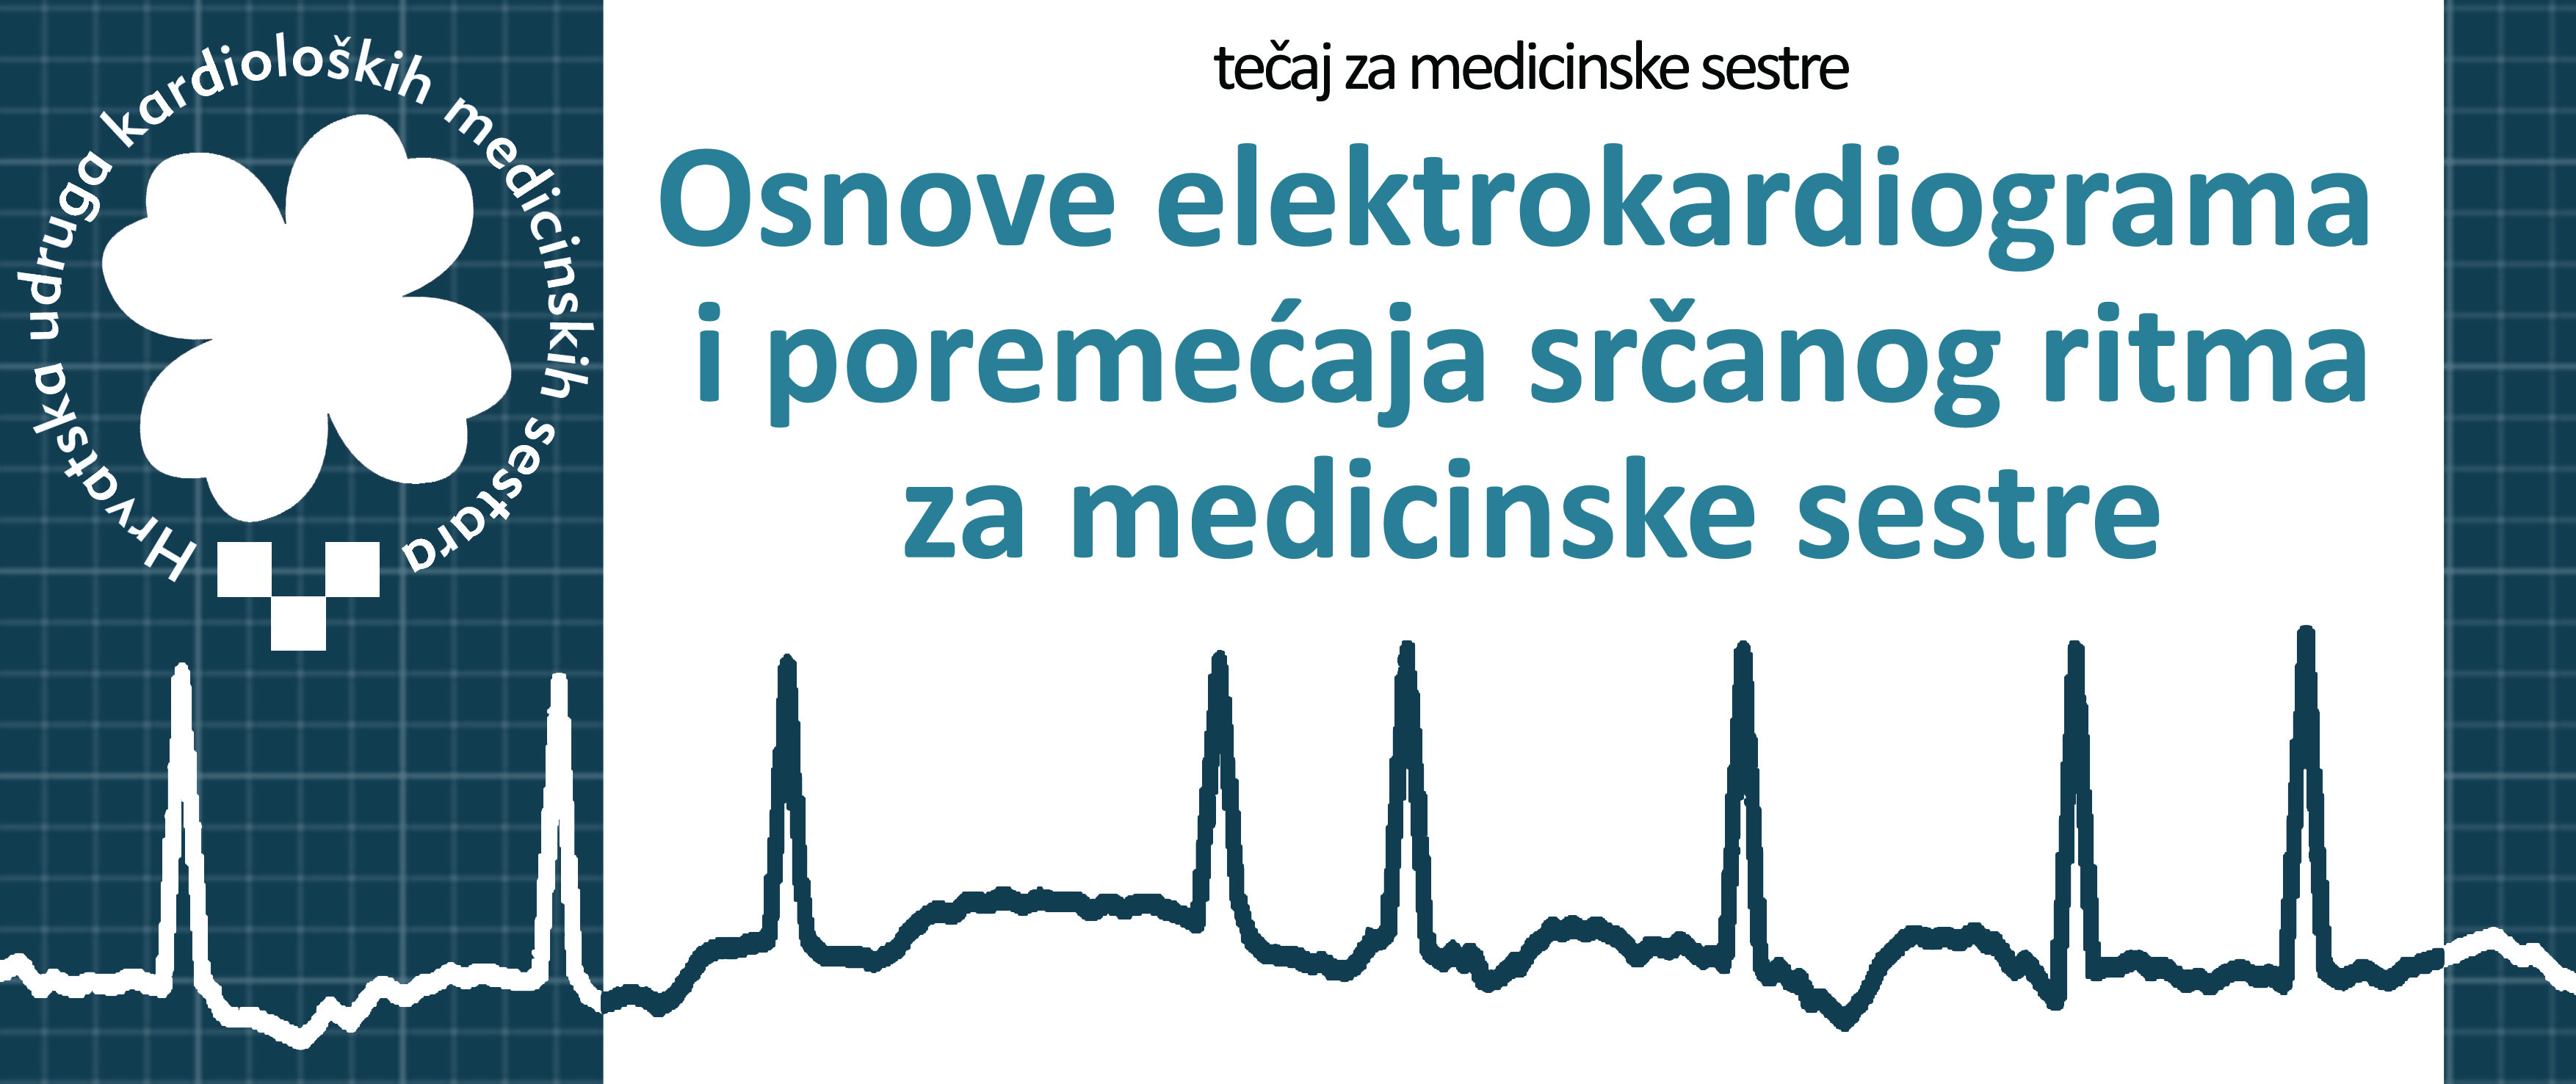 Tečaj EKG-a za medicinske sestre – Dubrovnik 27.1.2017.